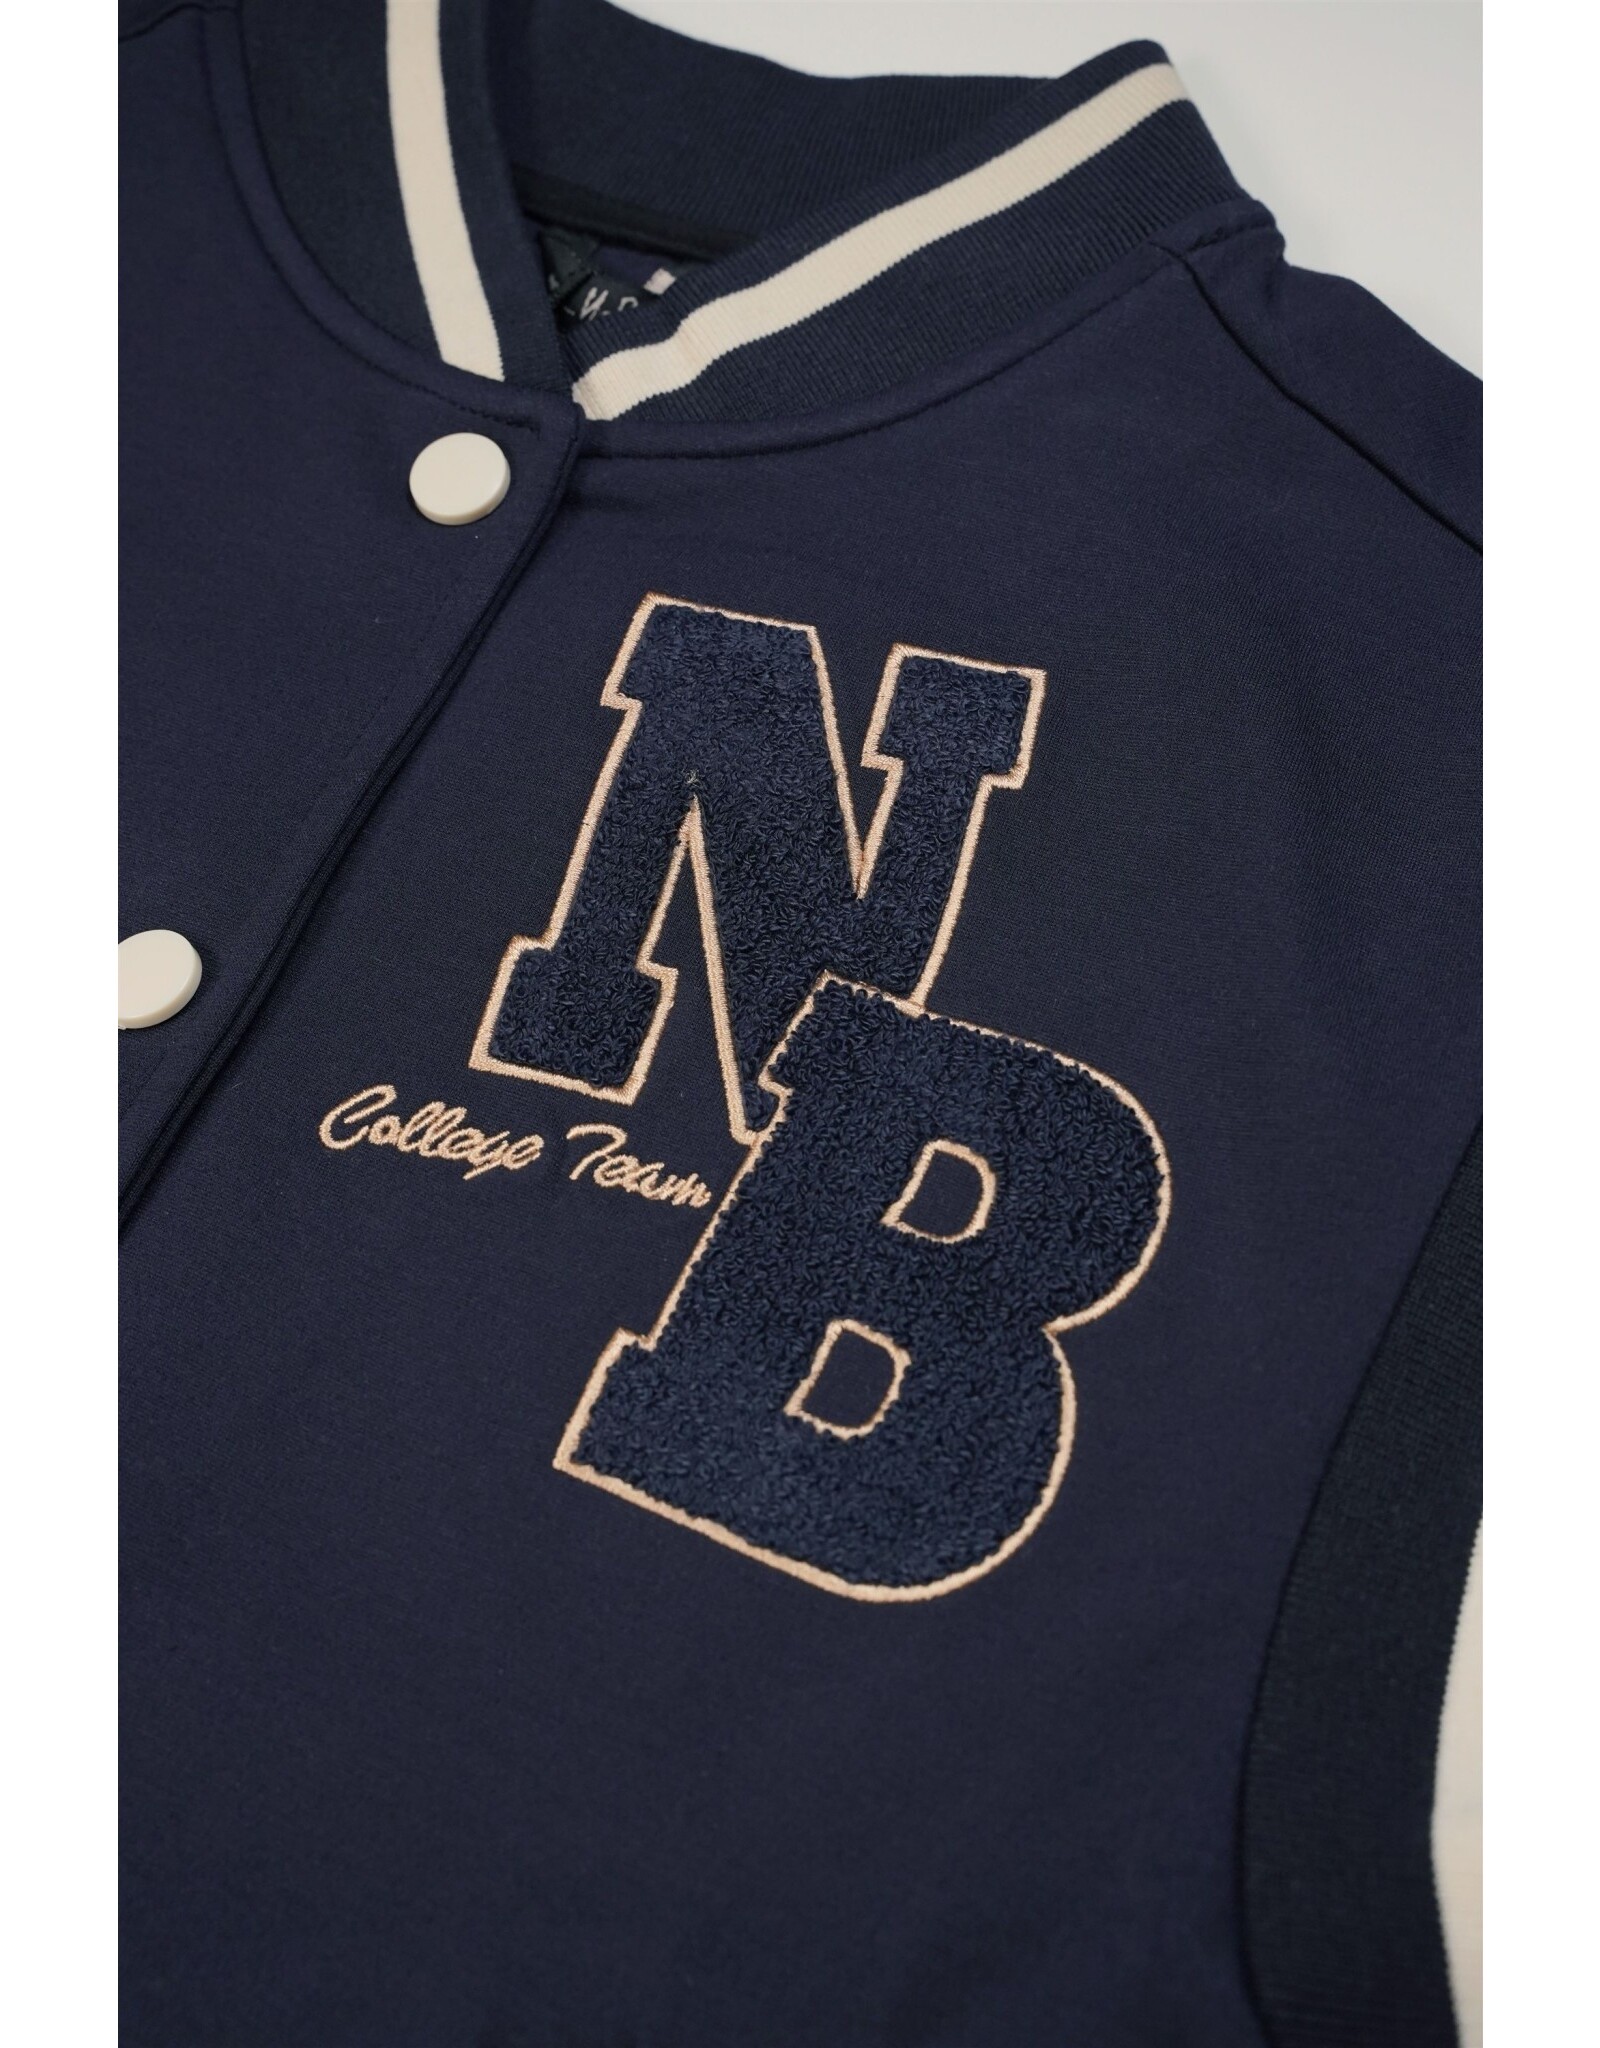 Nobell NoBell' Bar girls sleeveless varsity jacket navy Navy Blazer